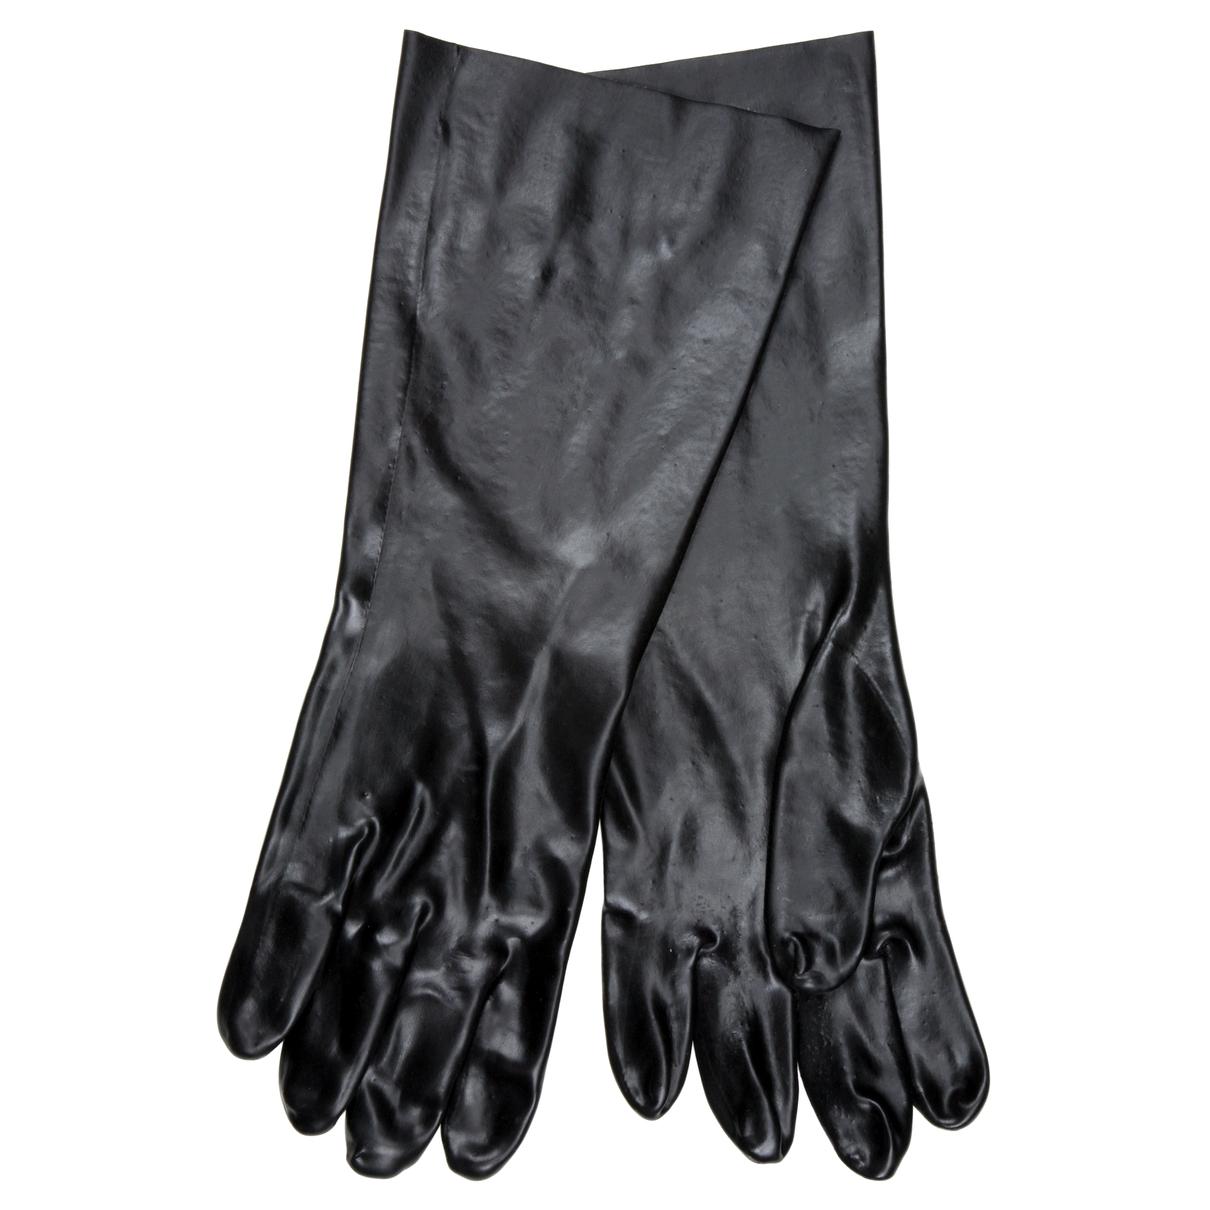 Dozen Of Interchangeable Stripe Anti Static Gloves Anti Skid Work Safety Gloves